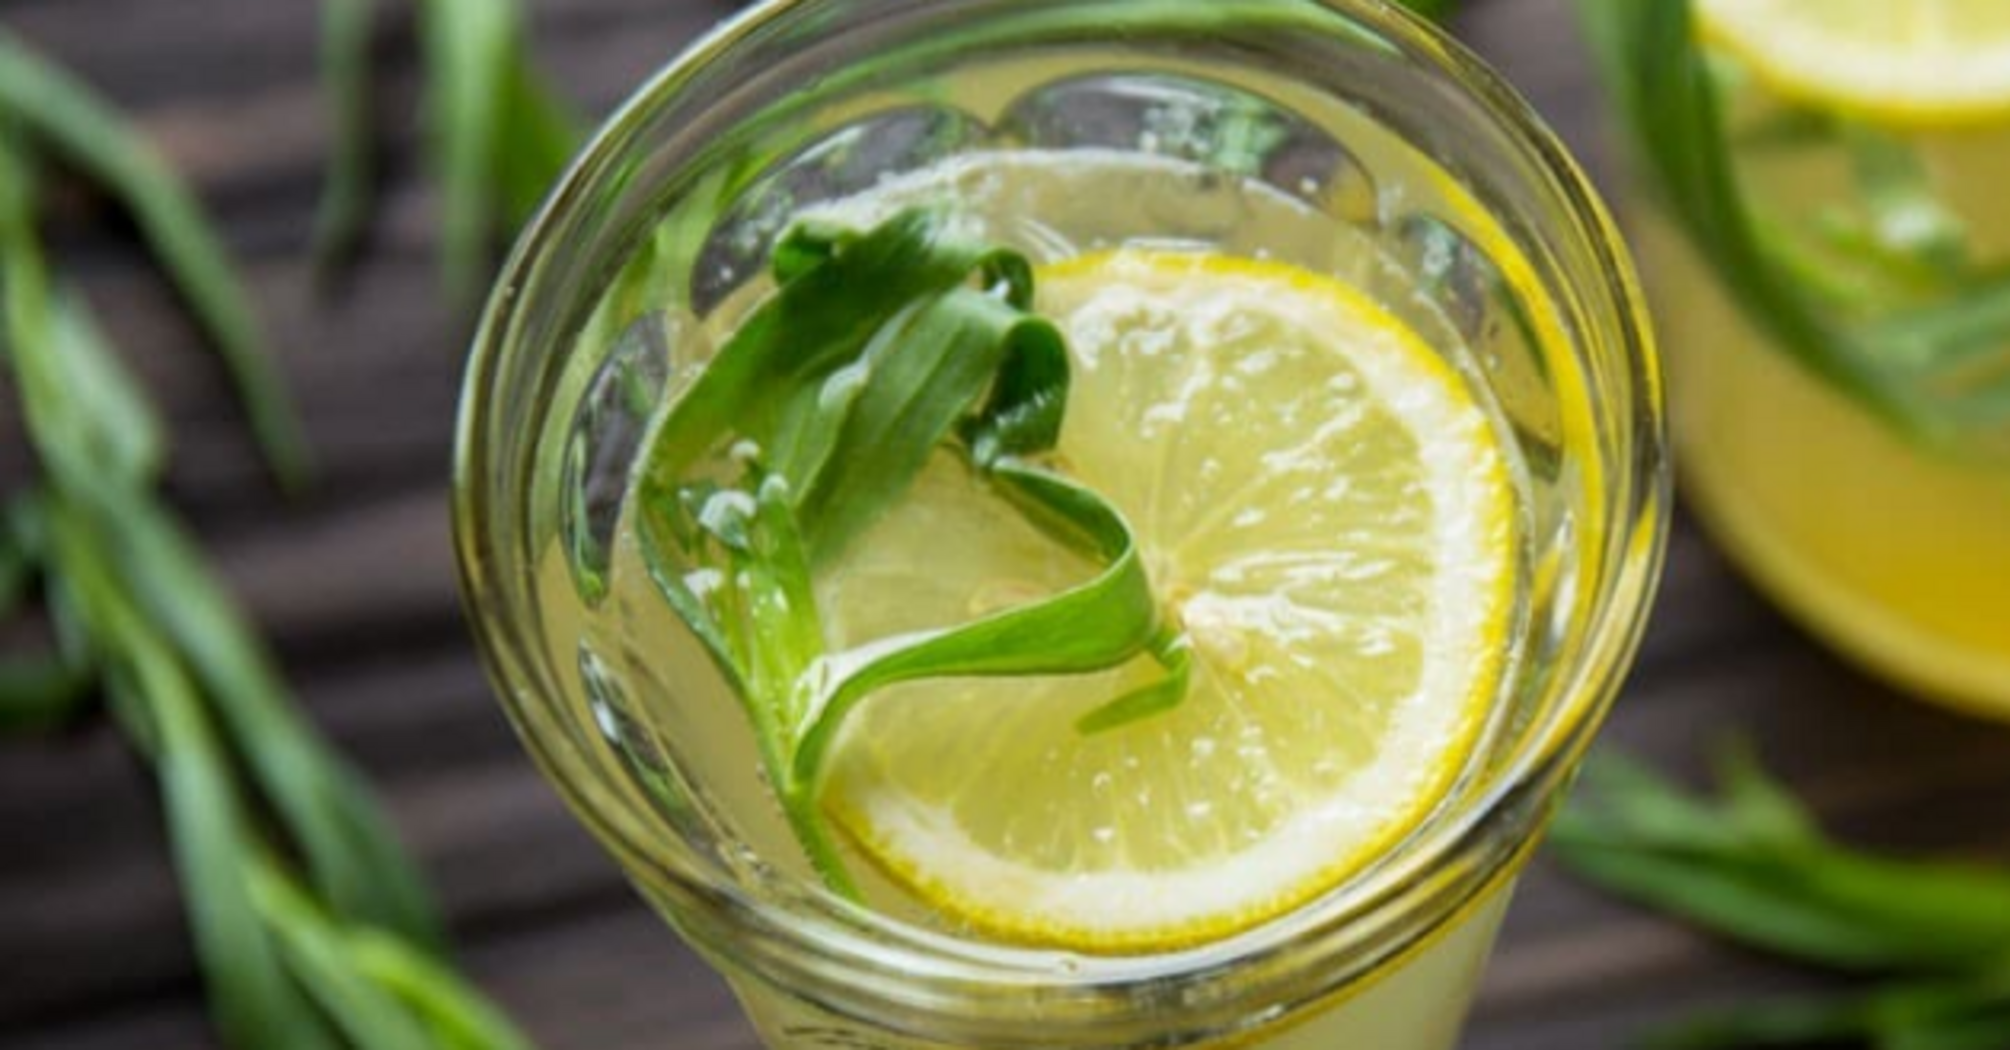 How to easily prepare tarragon lemonade at home